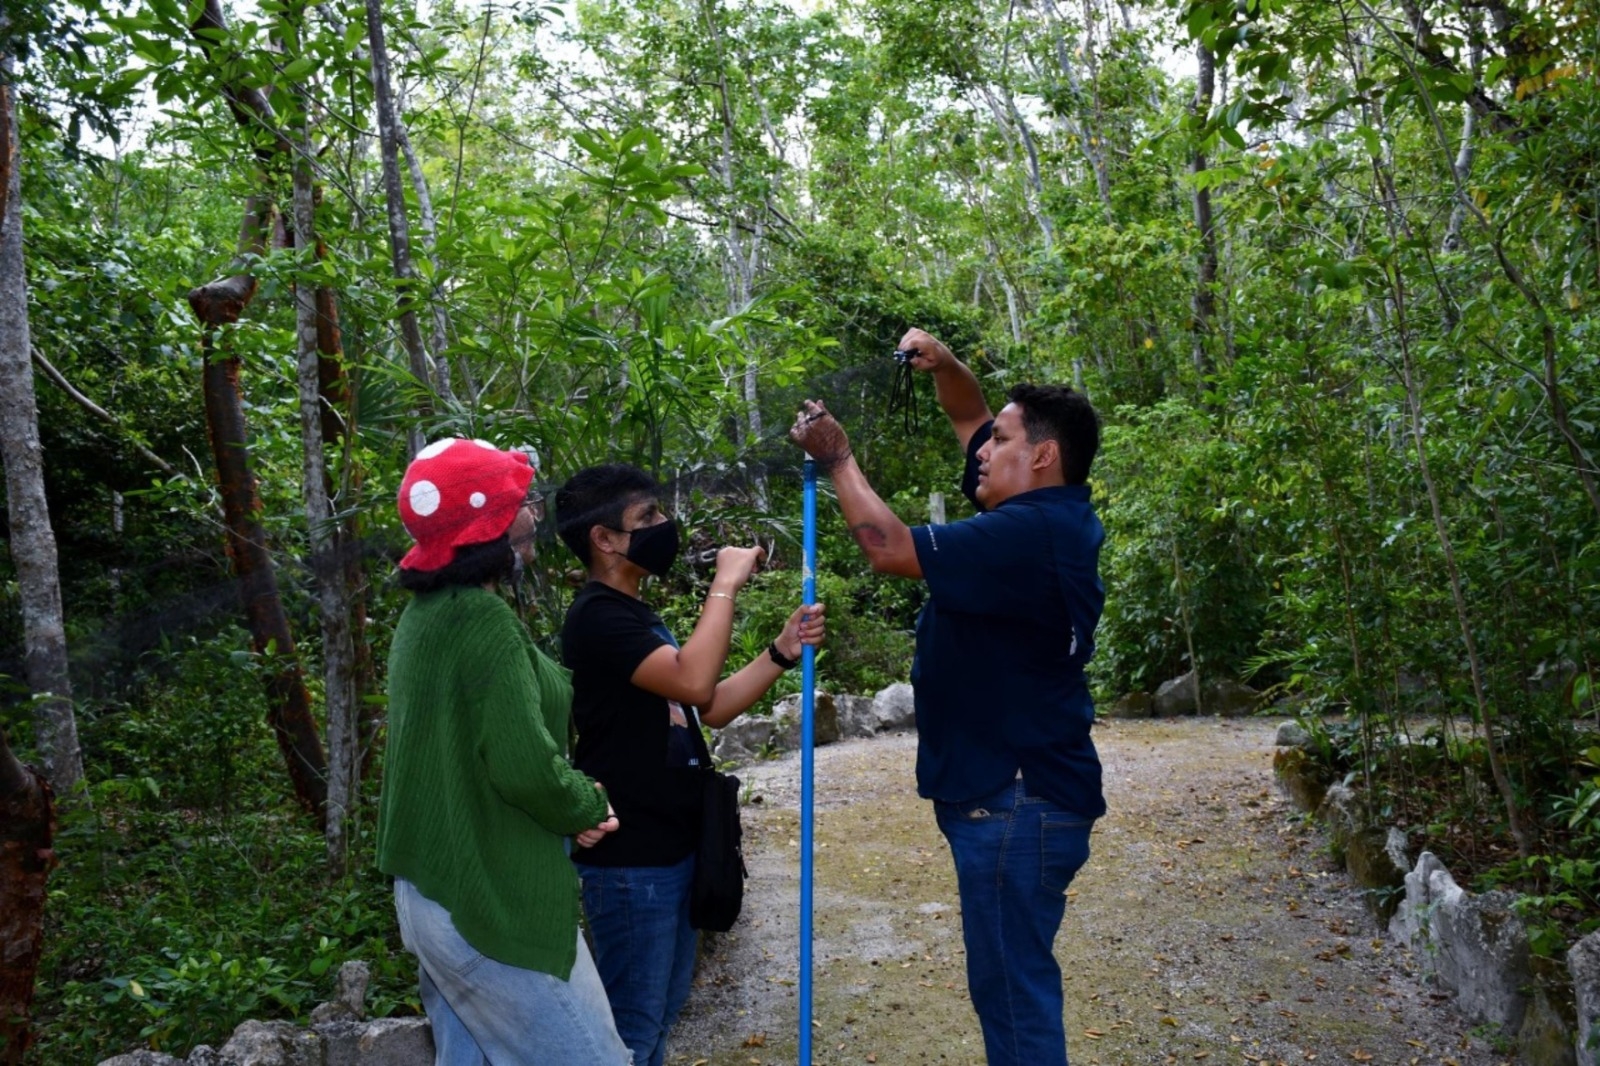 El nuevo murciélago hallado en Cozumel trata del ojón peludo, con lo que aumenta la diversidad de especies